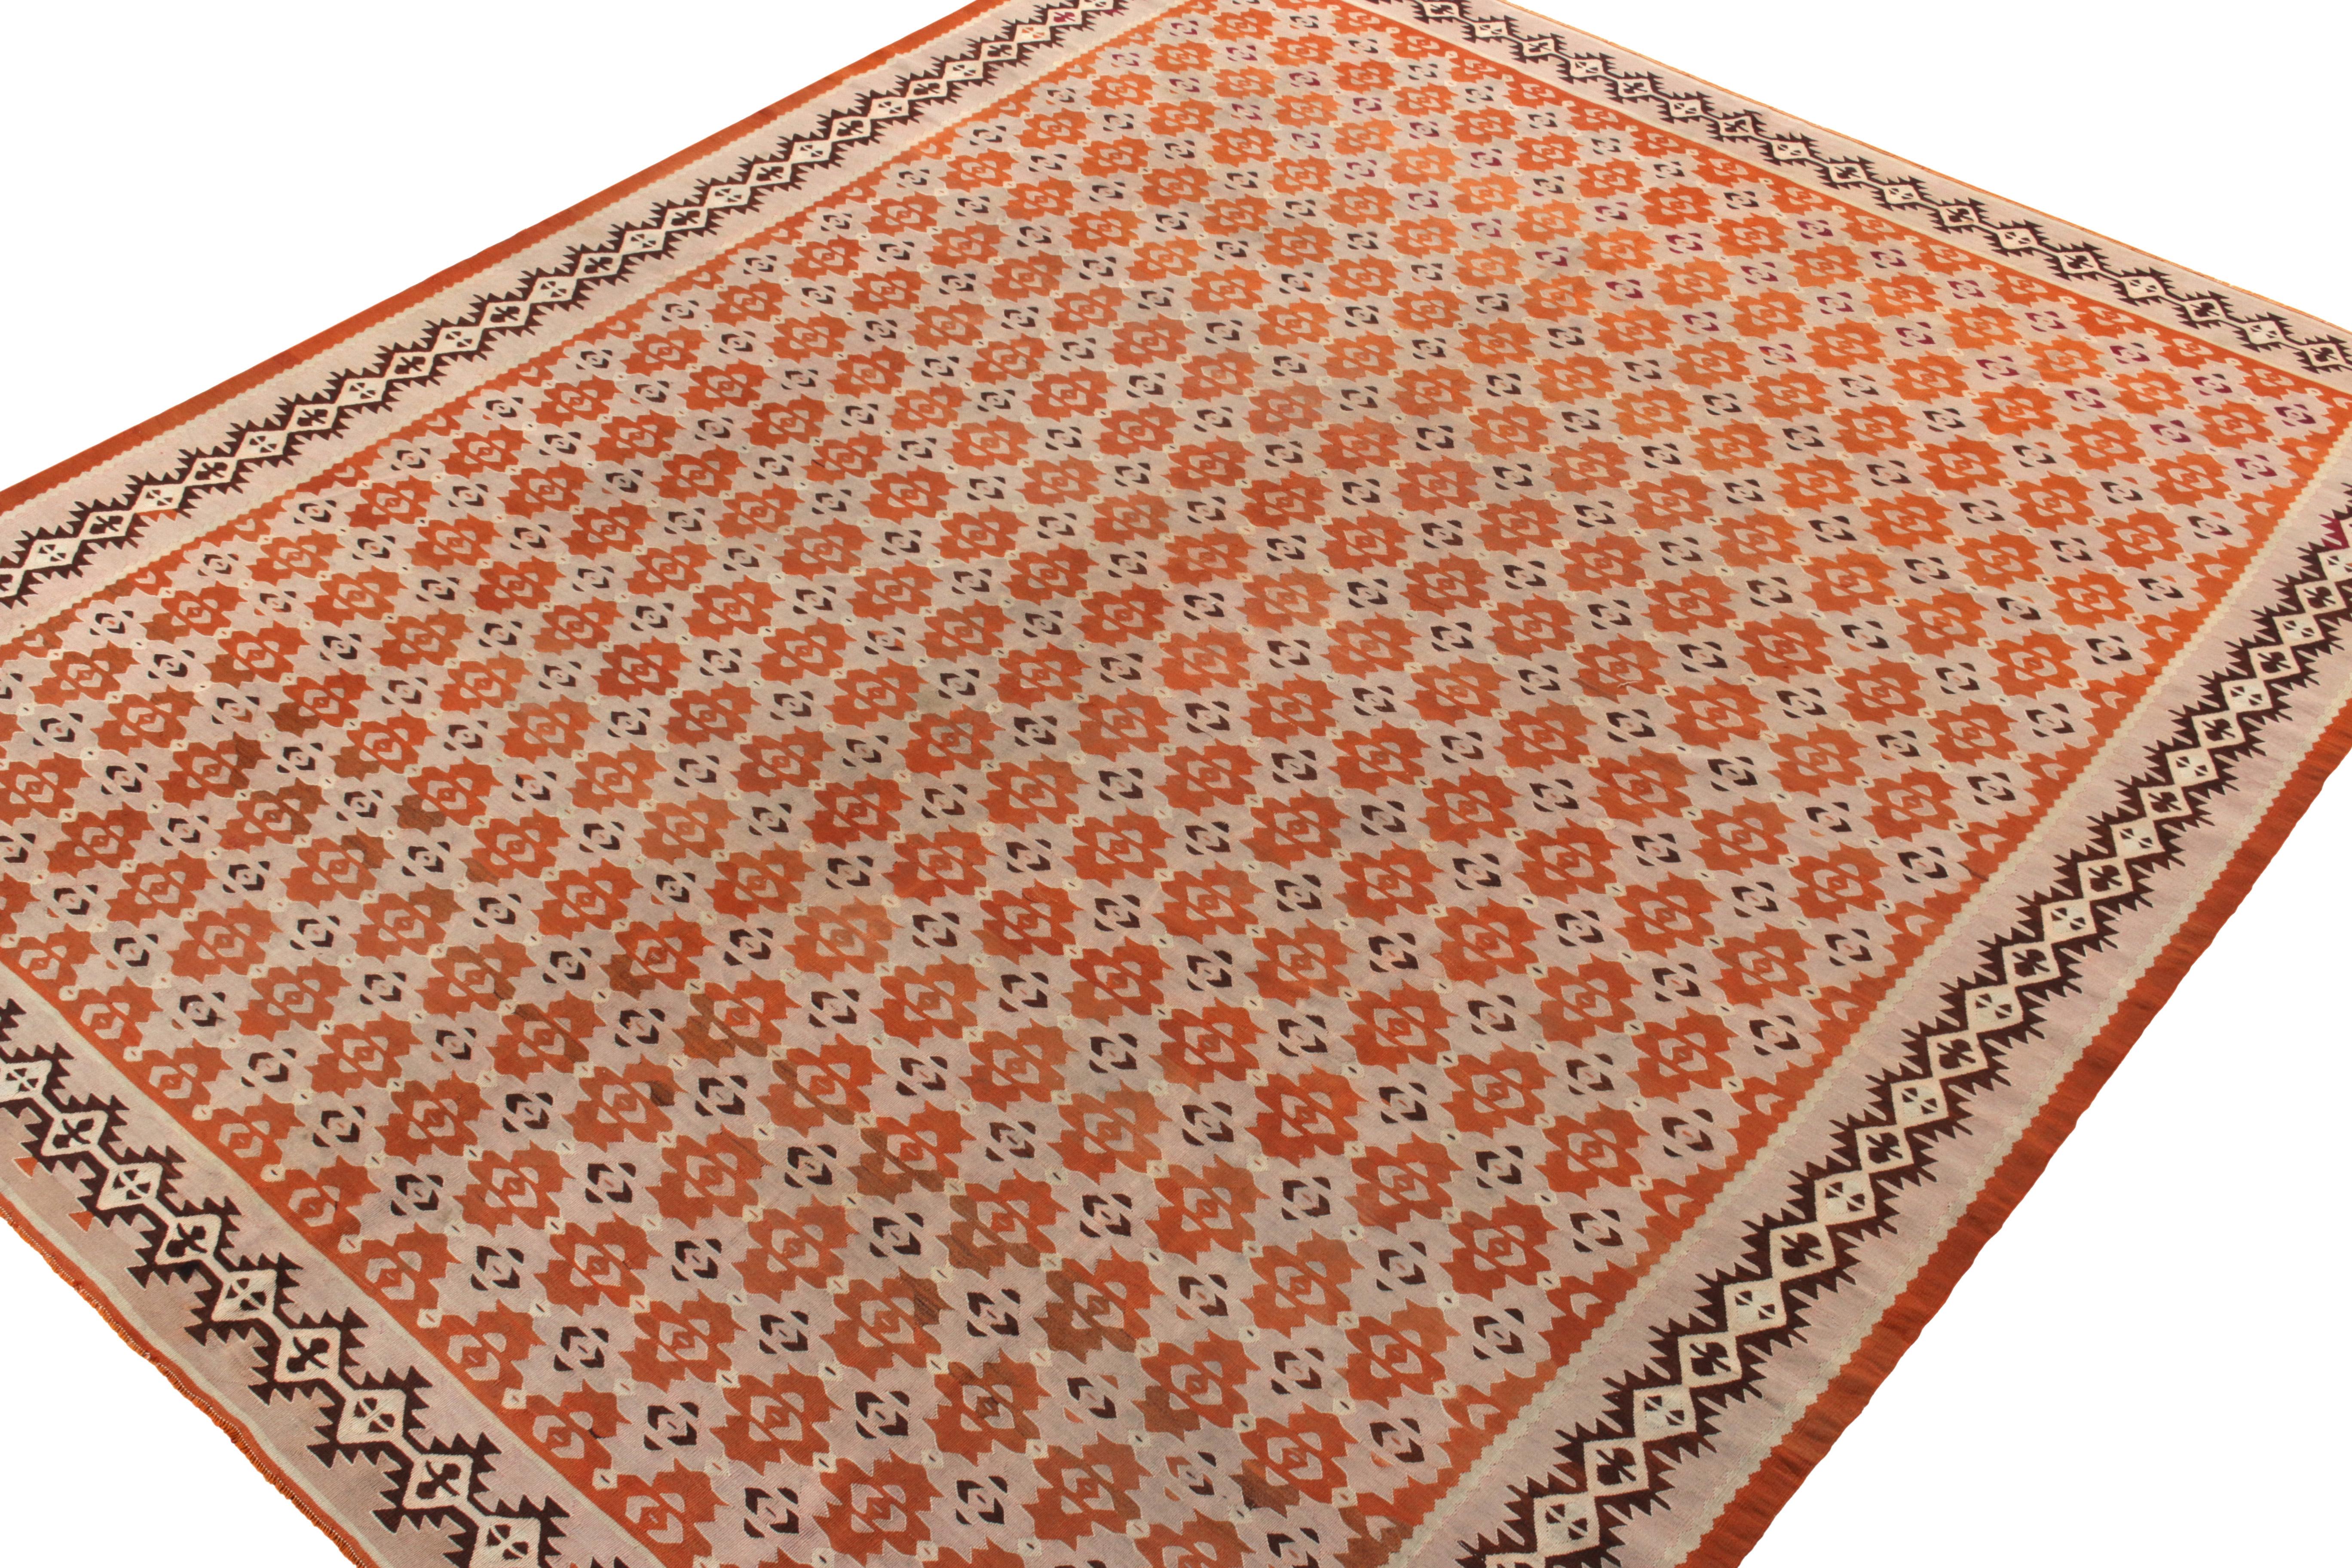 Tribal Handwoven Vintage Kilim Rug in Pink, Brown Geometric Pattern by Rug & Kilim For Sale